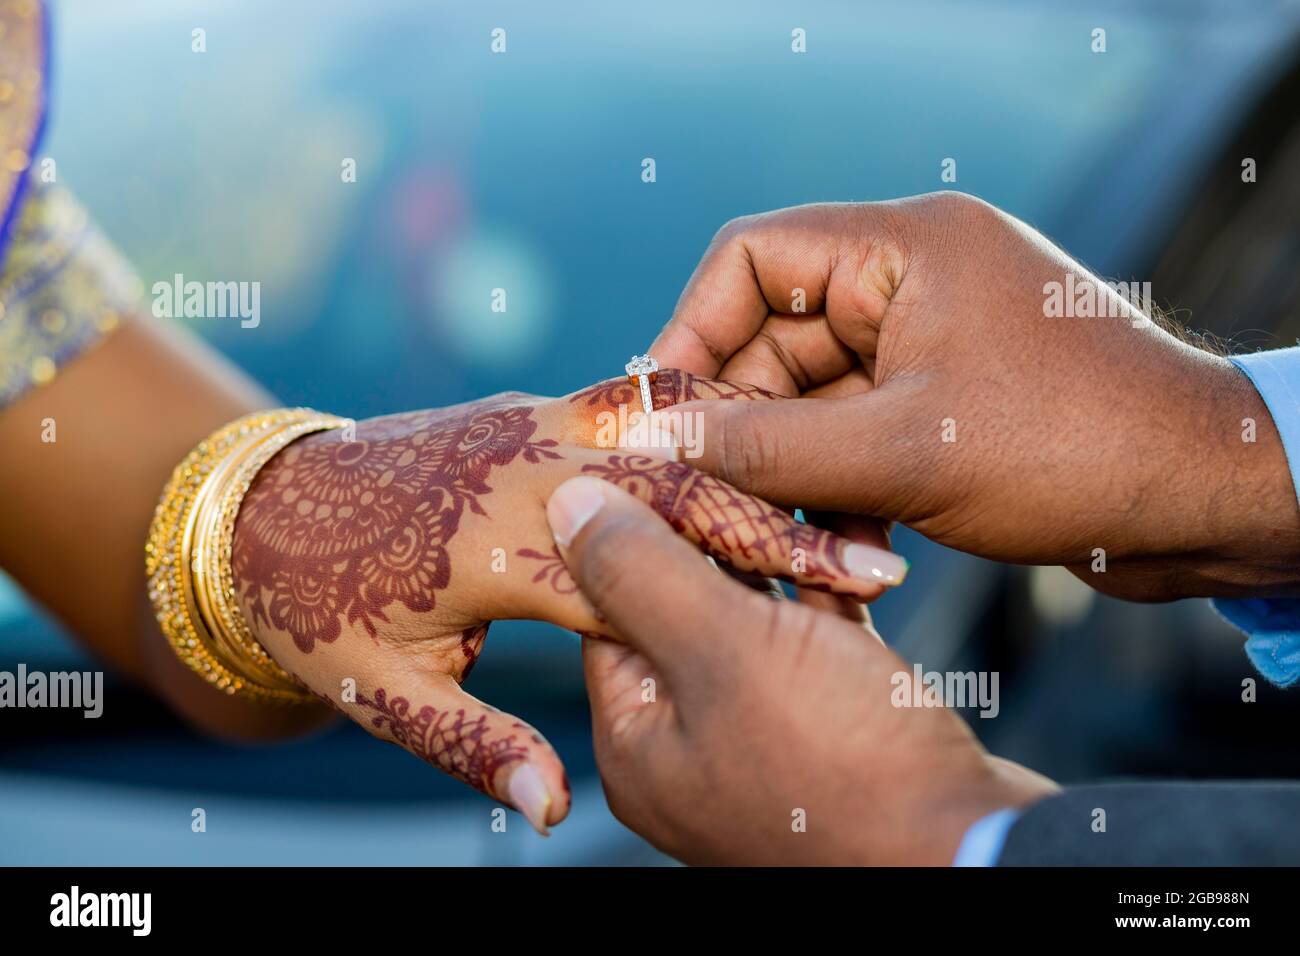 Hand Indian Wedding Heena - Free photo on Pixabay - Pixabay